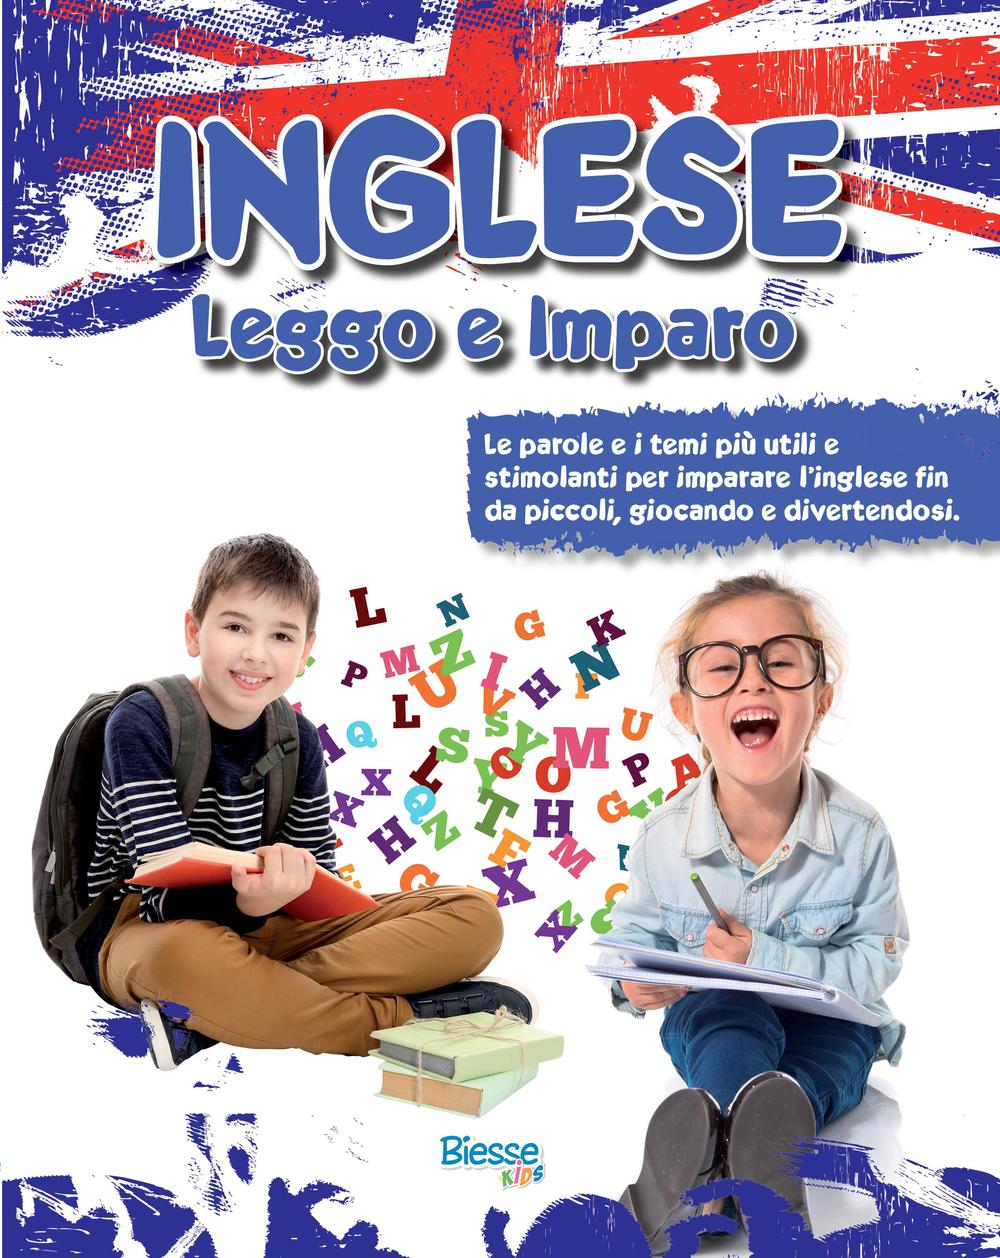 Inglese leggo e imparo. Le parole e i temi più utili e stimolanti per imparare l'inglese fin da piccoli, giocando e divertendosi